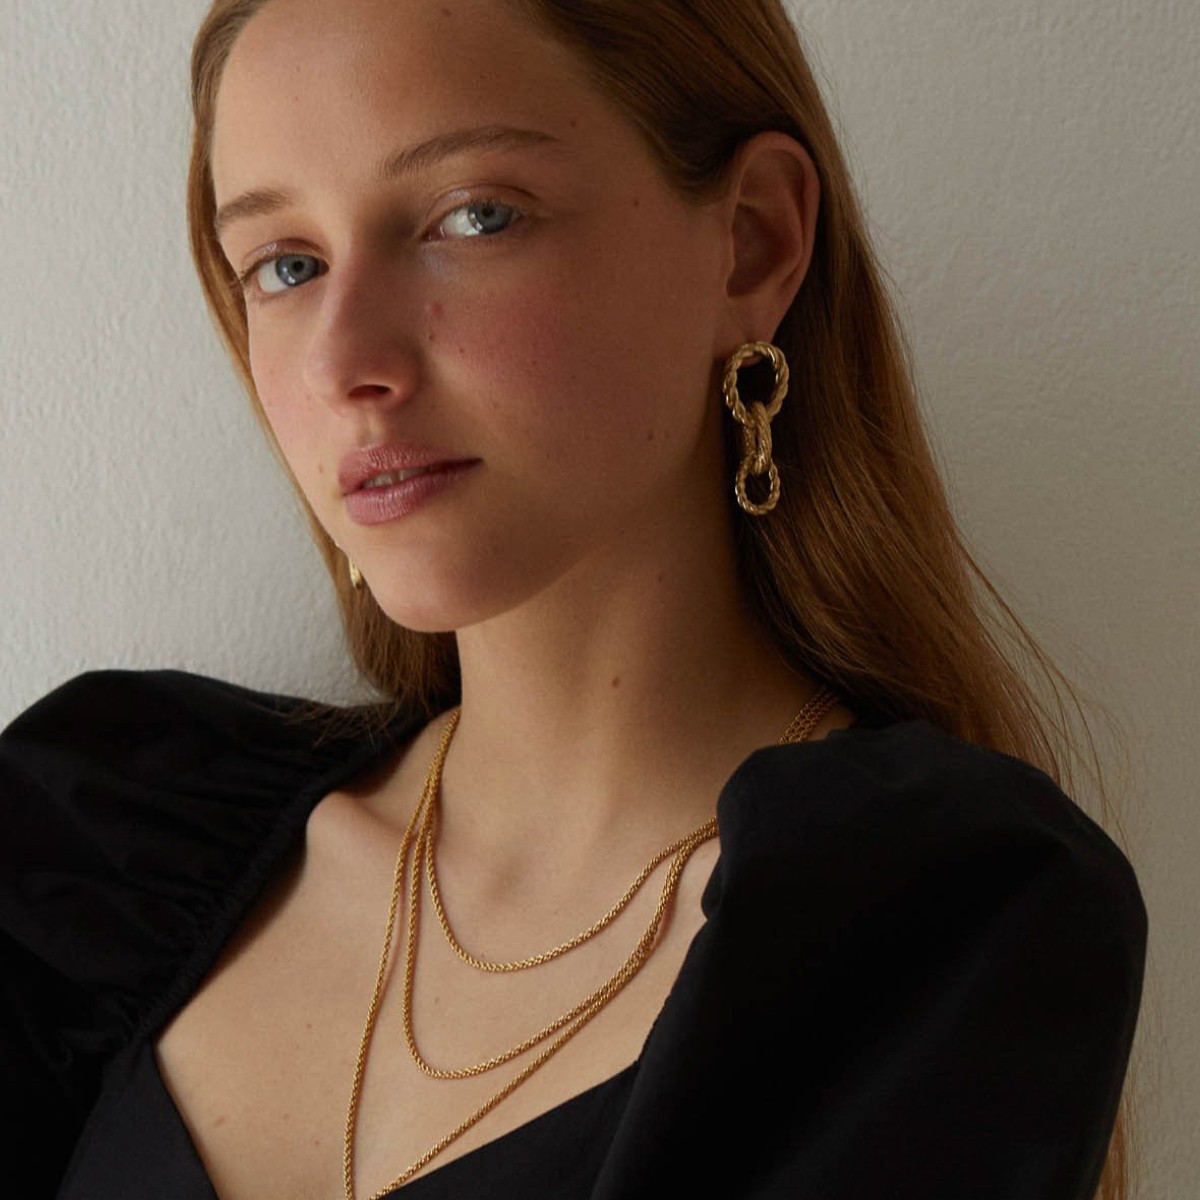 Mrs. Gold Earrings - Ohrringe - 24k vergoldet